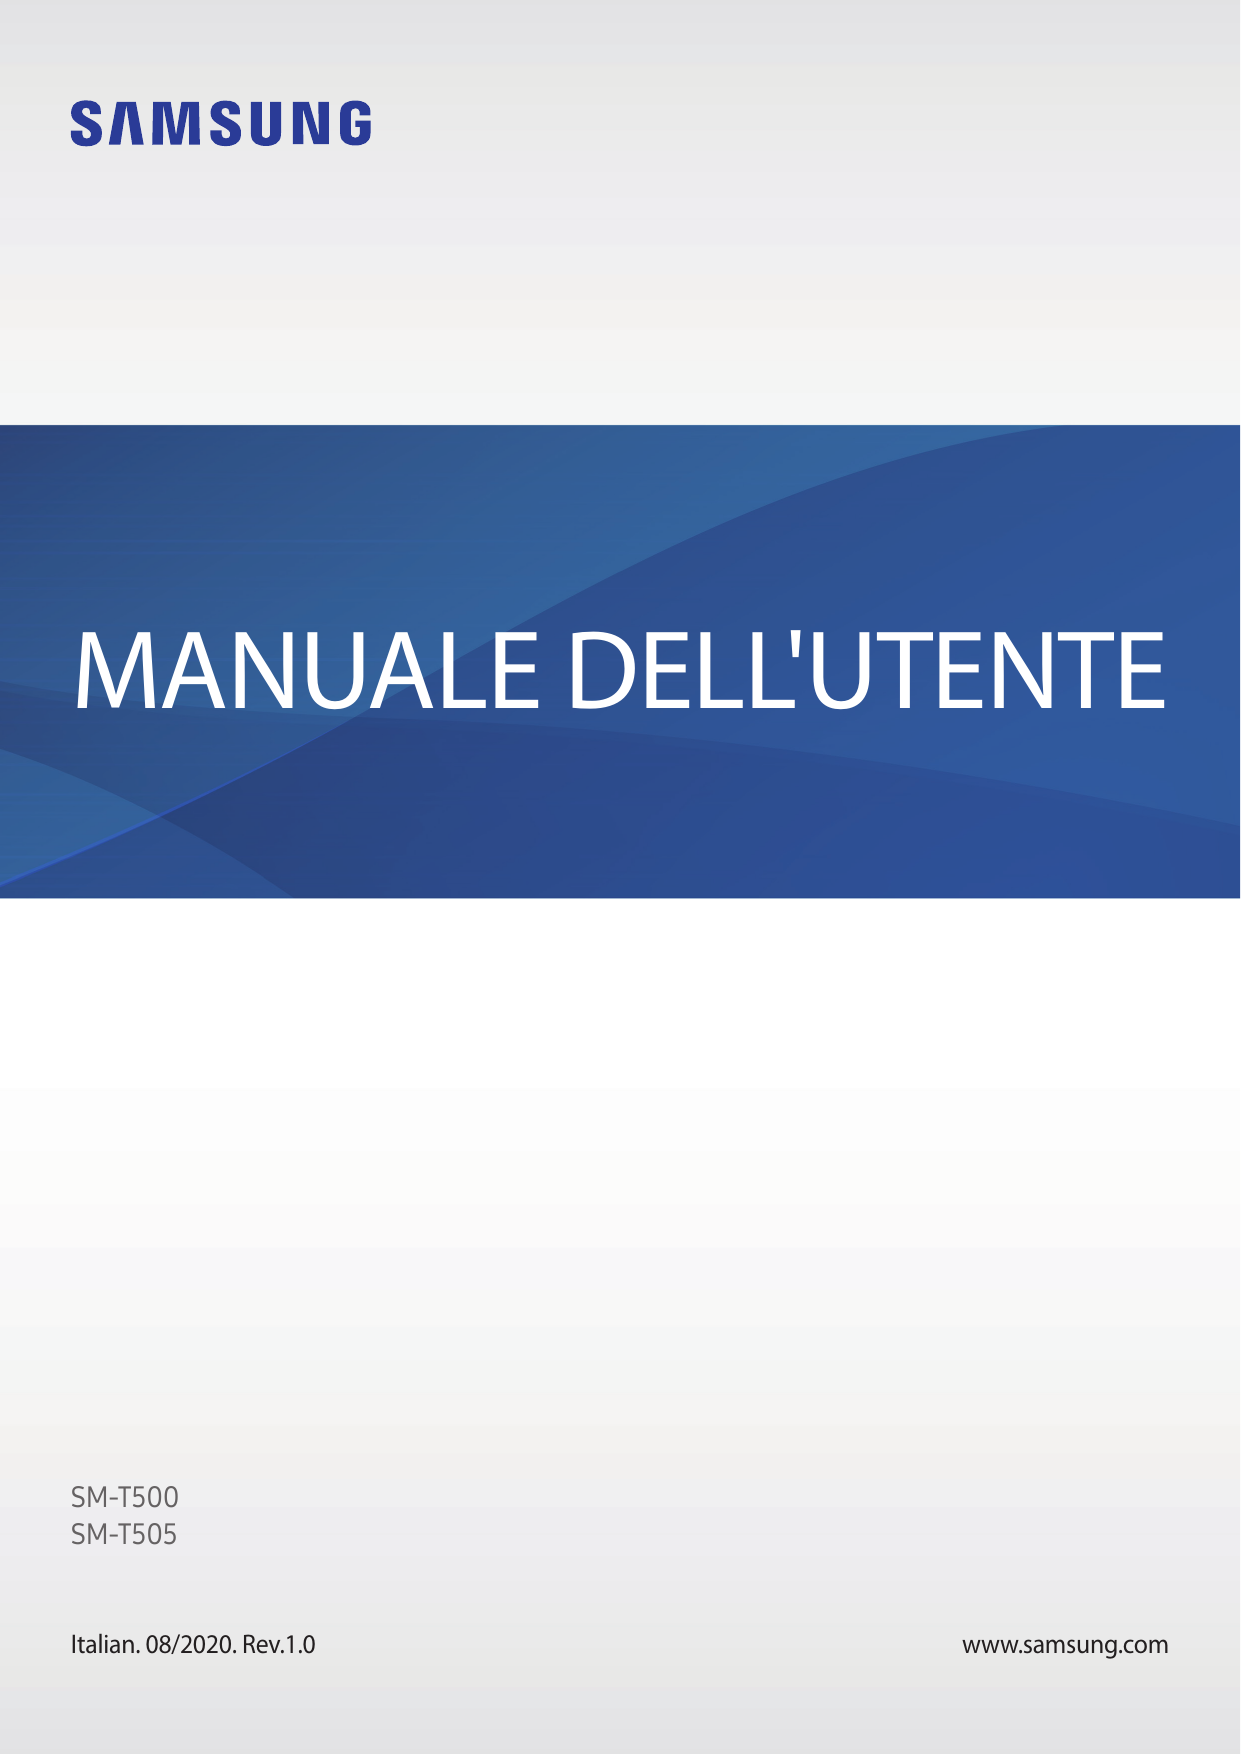 MANUALE DELL'UTENTESM-T500SM-T505Italian. 08/2020. Rev.1.0www.samsung.com